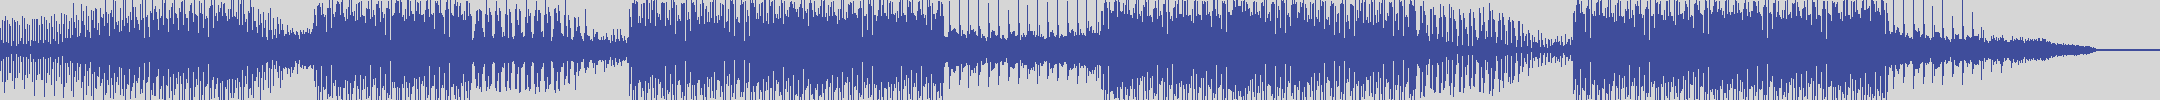 nf_boyz_records [NFY076] Modus Medusae - Dandara [Original Mix] audio wave form